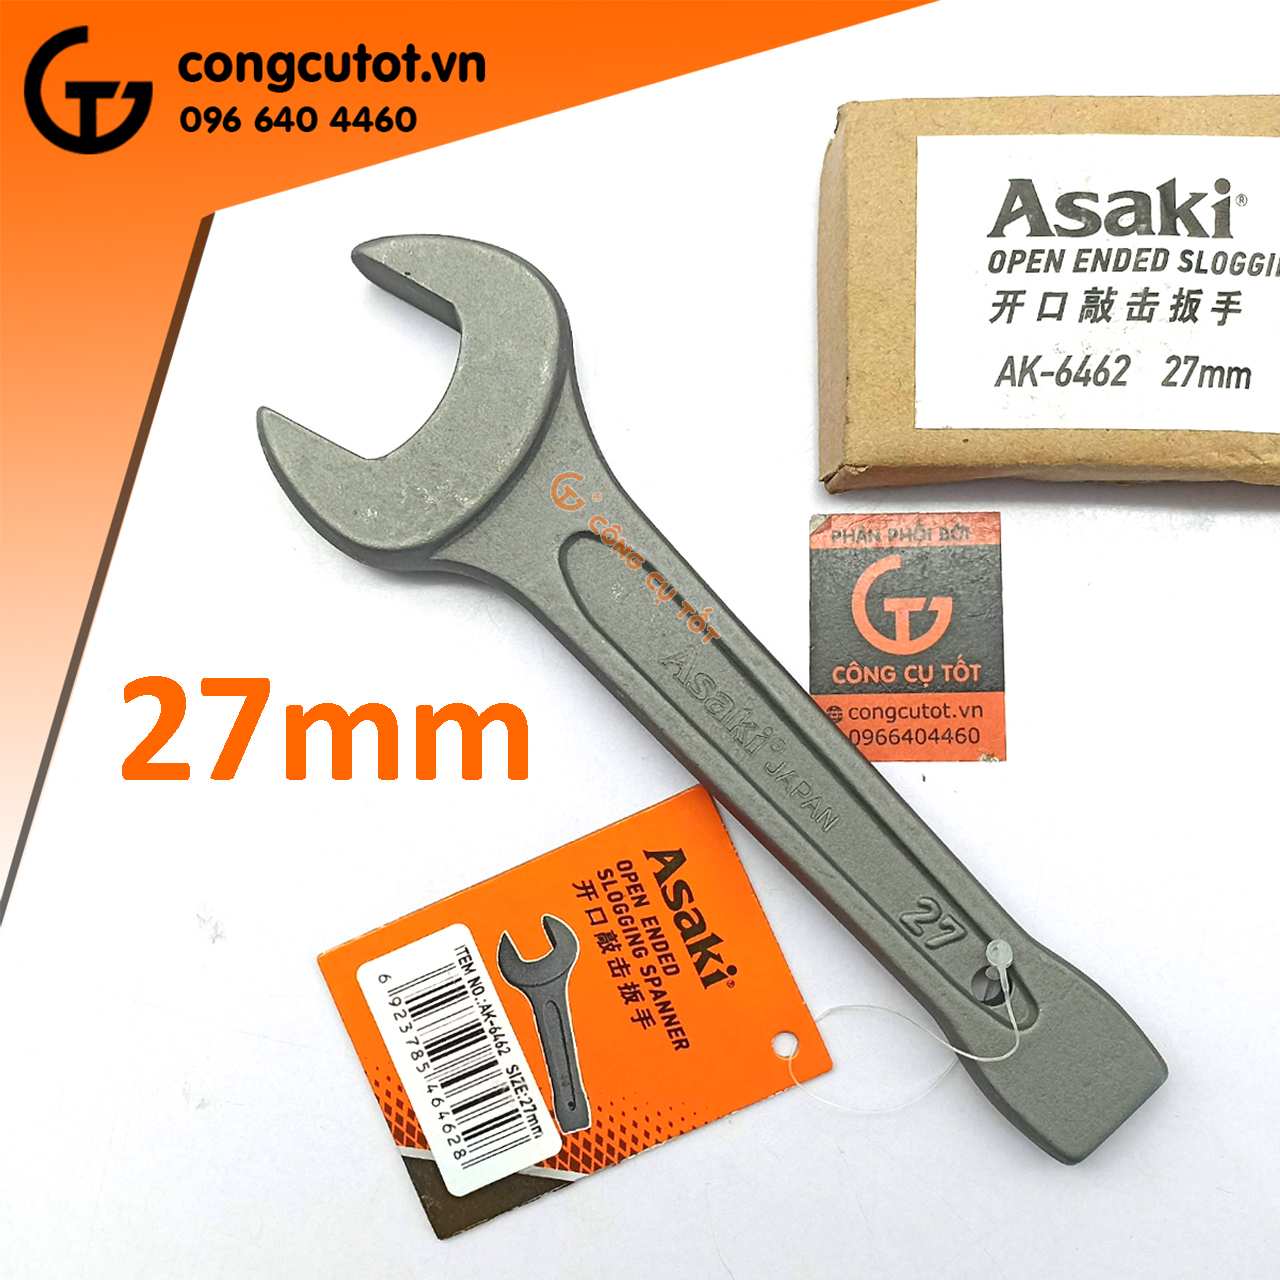 Cờ lê miệng đóng 27mm Asaki AK-6462